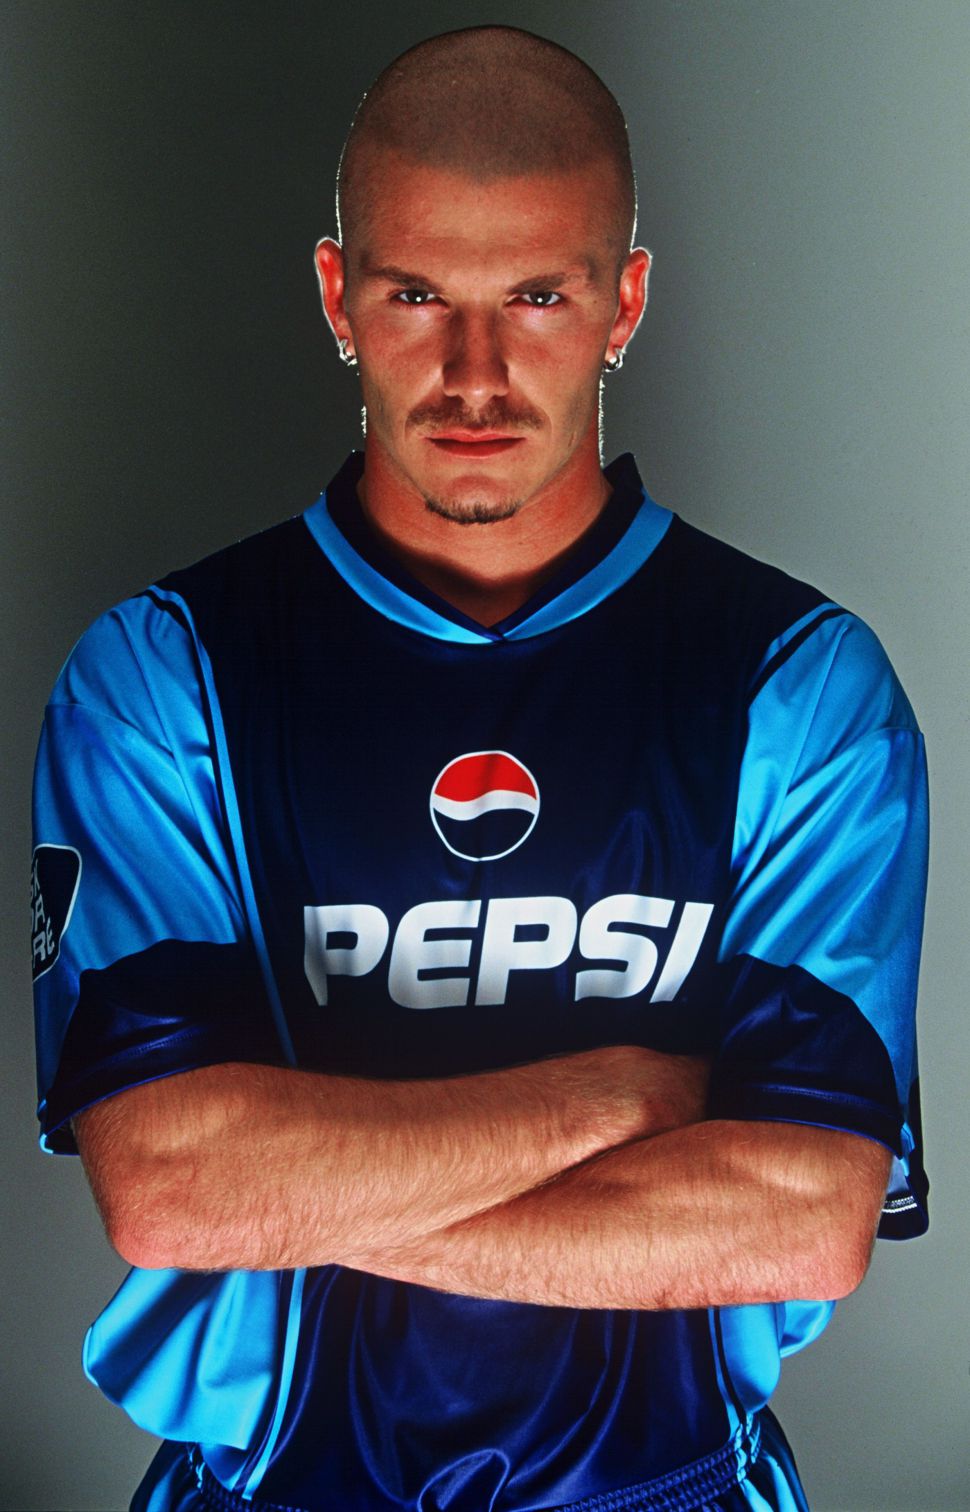 Áo đấu Beckham #7 Pepsi 2001 blue shirt signed